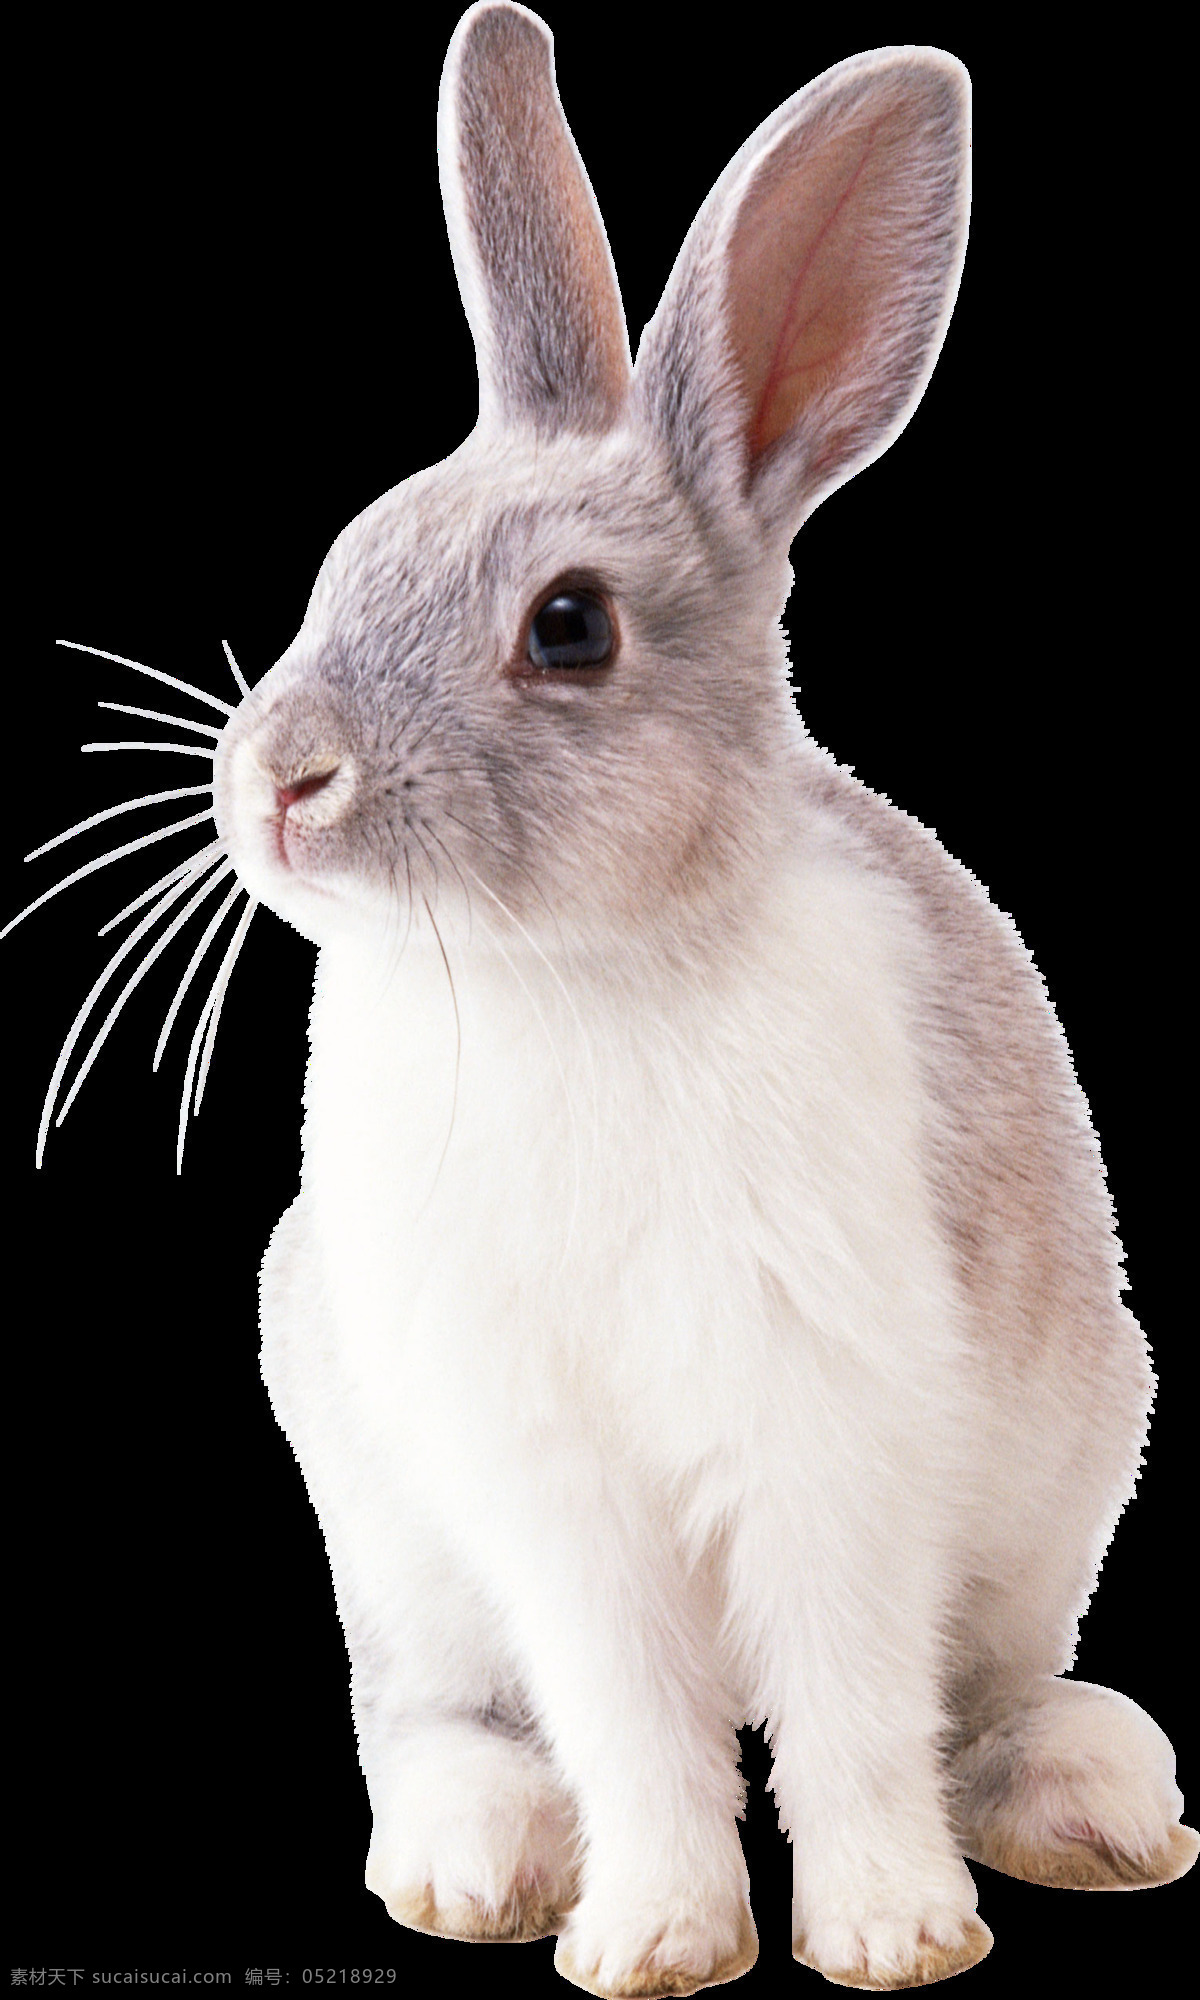 坐 地上 兔子 免 抠 透明 坐地上的兔子 超 萌 可爱 小 可爱小兔子 大兔子 萌兔子 可爱兔子 兔子素材 兔子照片